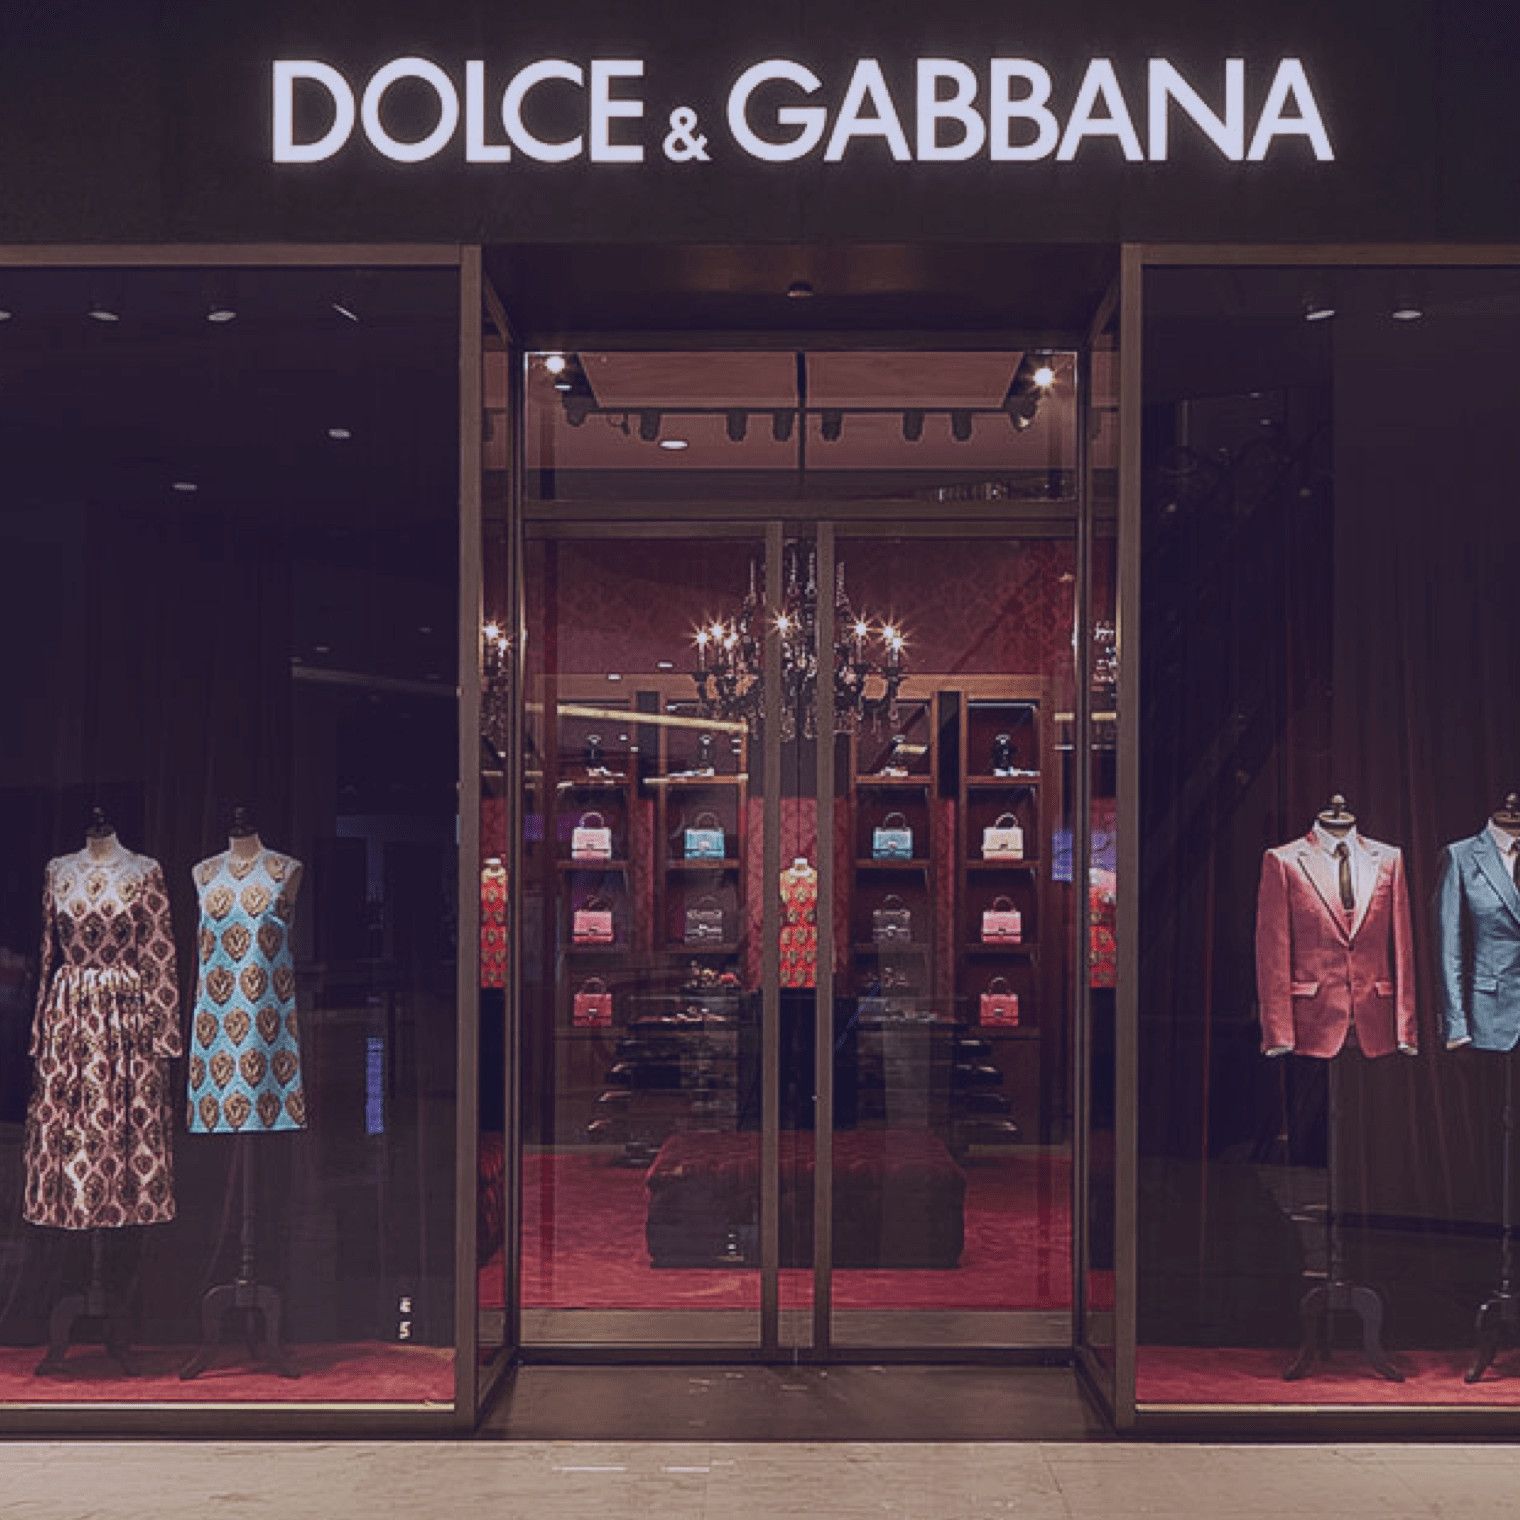 Dolce & Gabbana - Case Study